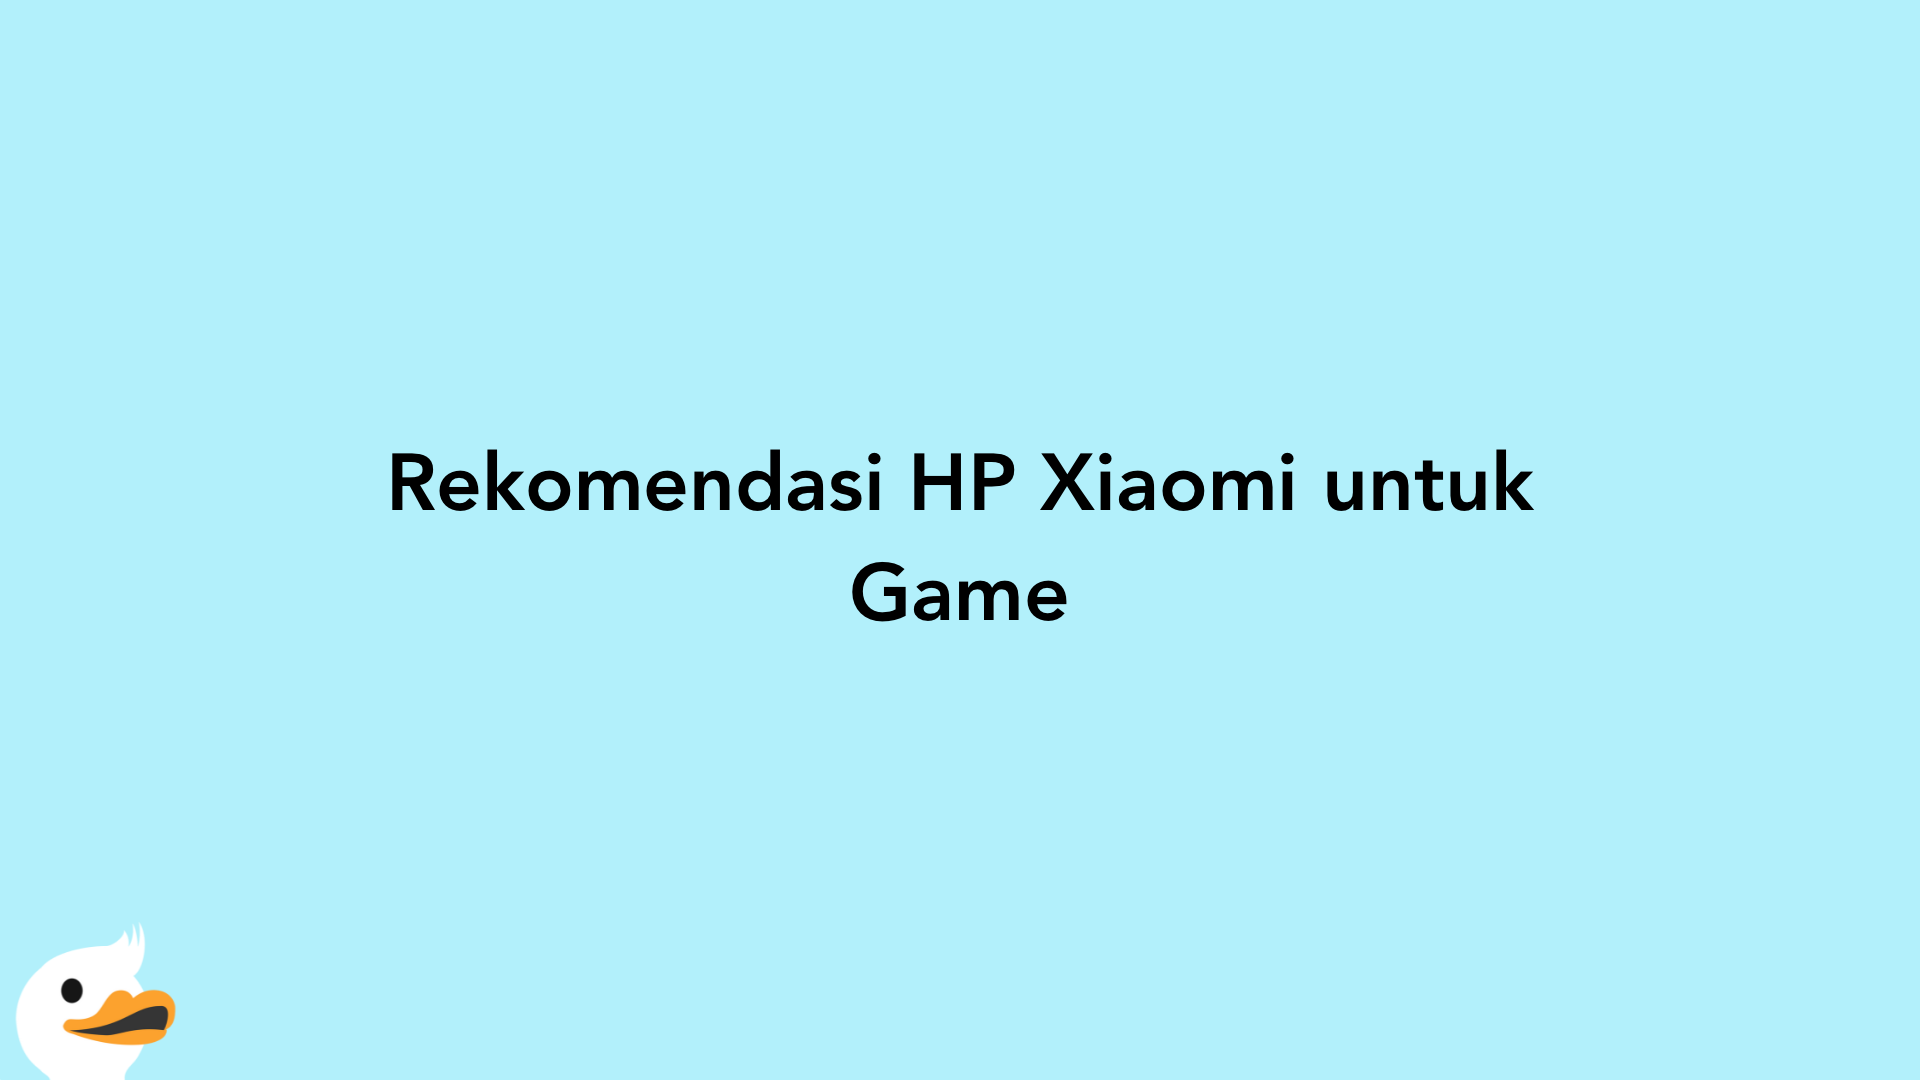 Rekomendasi HP Xiaomi untuk Game